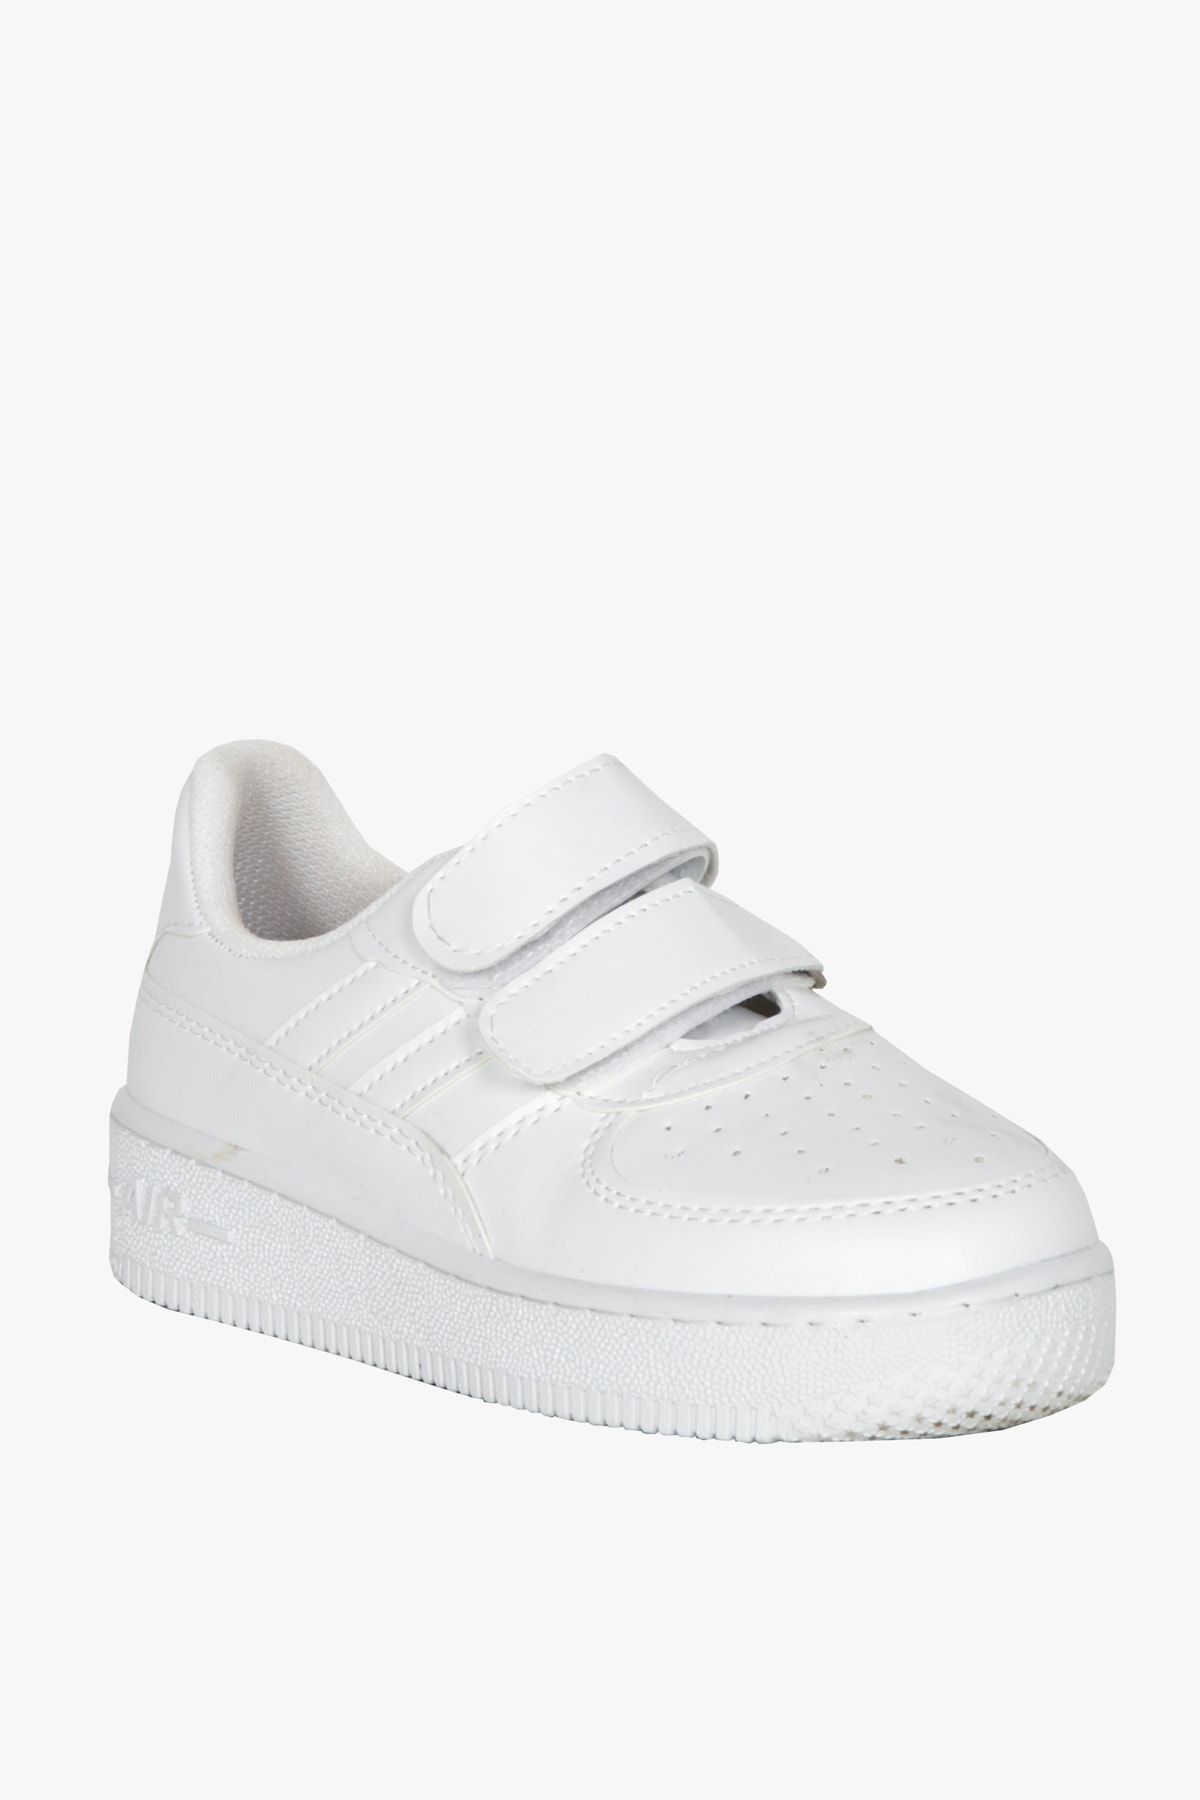 kabkabi Çocuk Cırt Cırtlı Beyaz Outdoor Spor Ayakkabı Sneaker